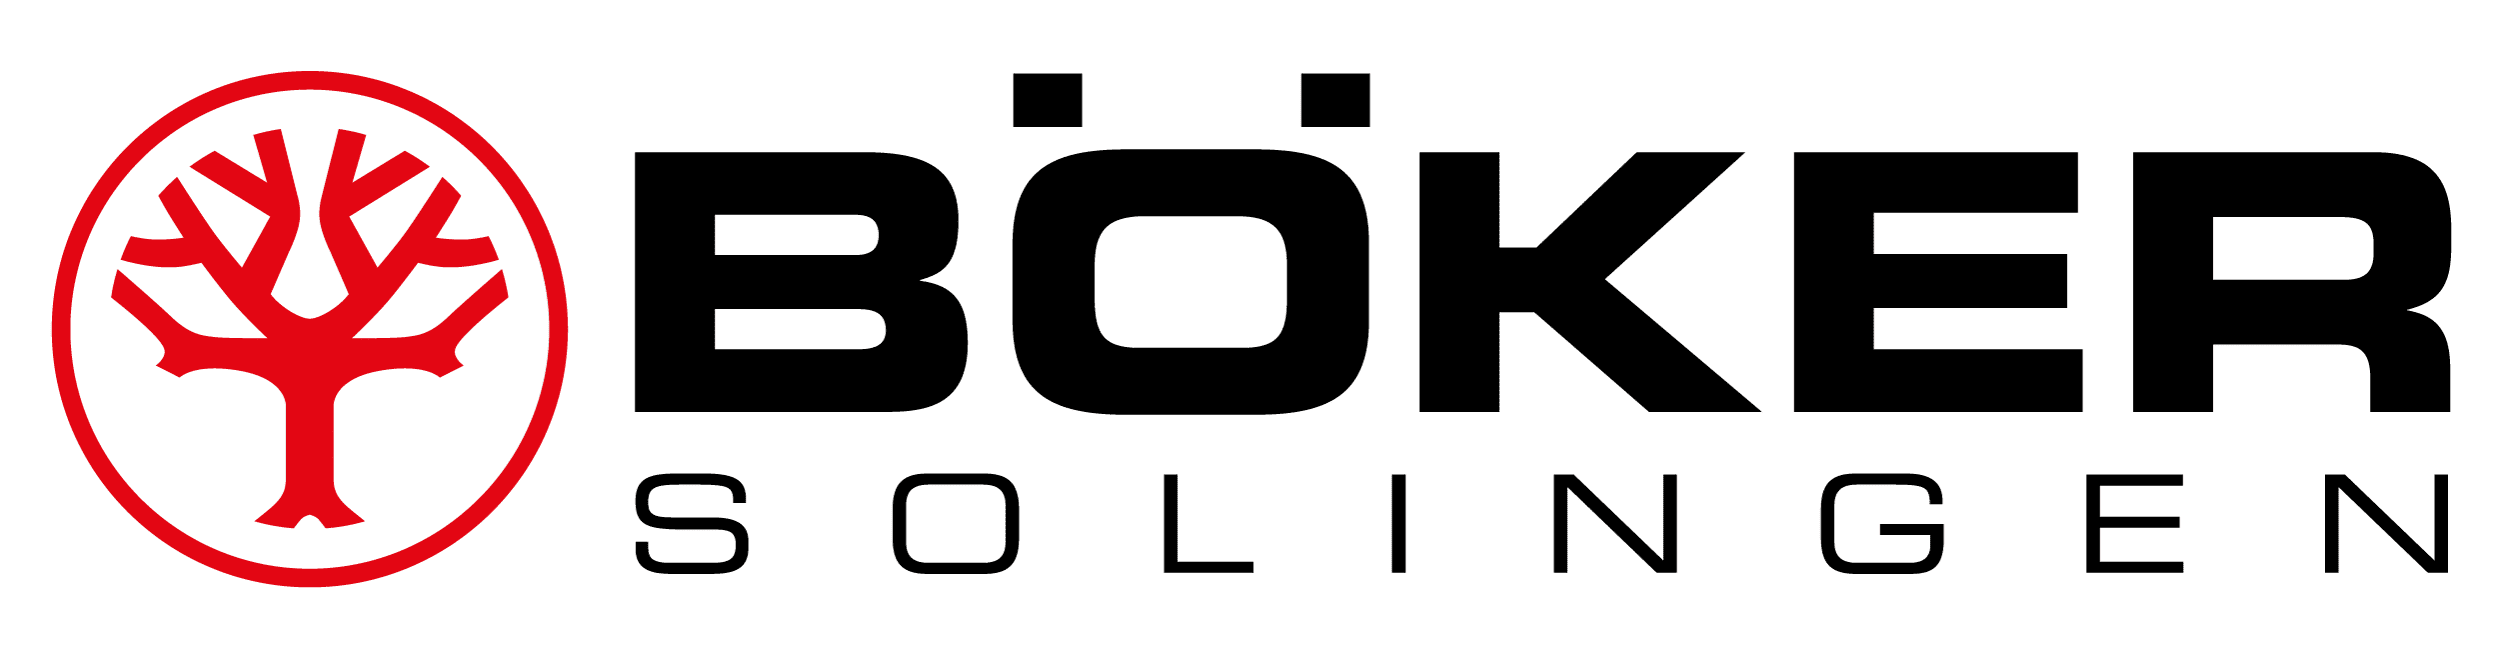 Boker Logo